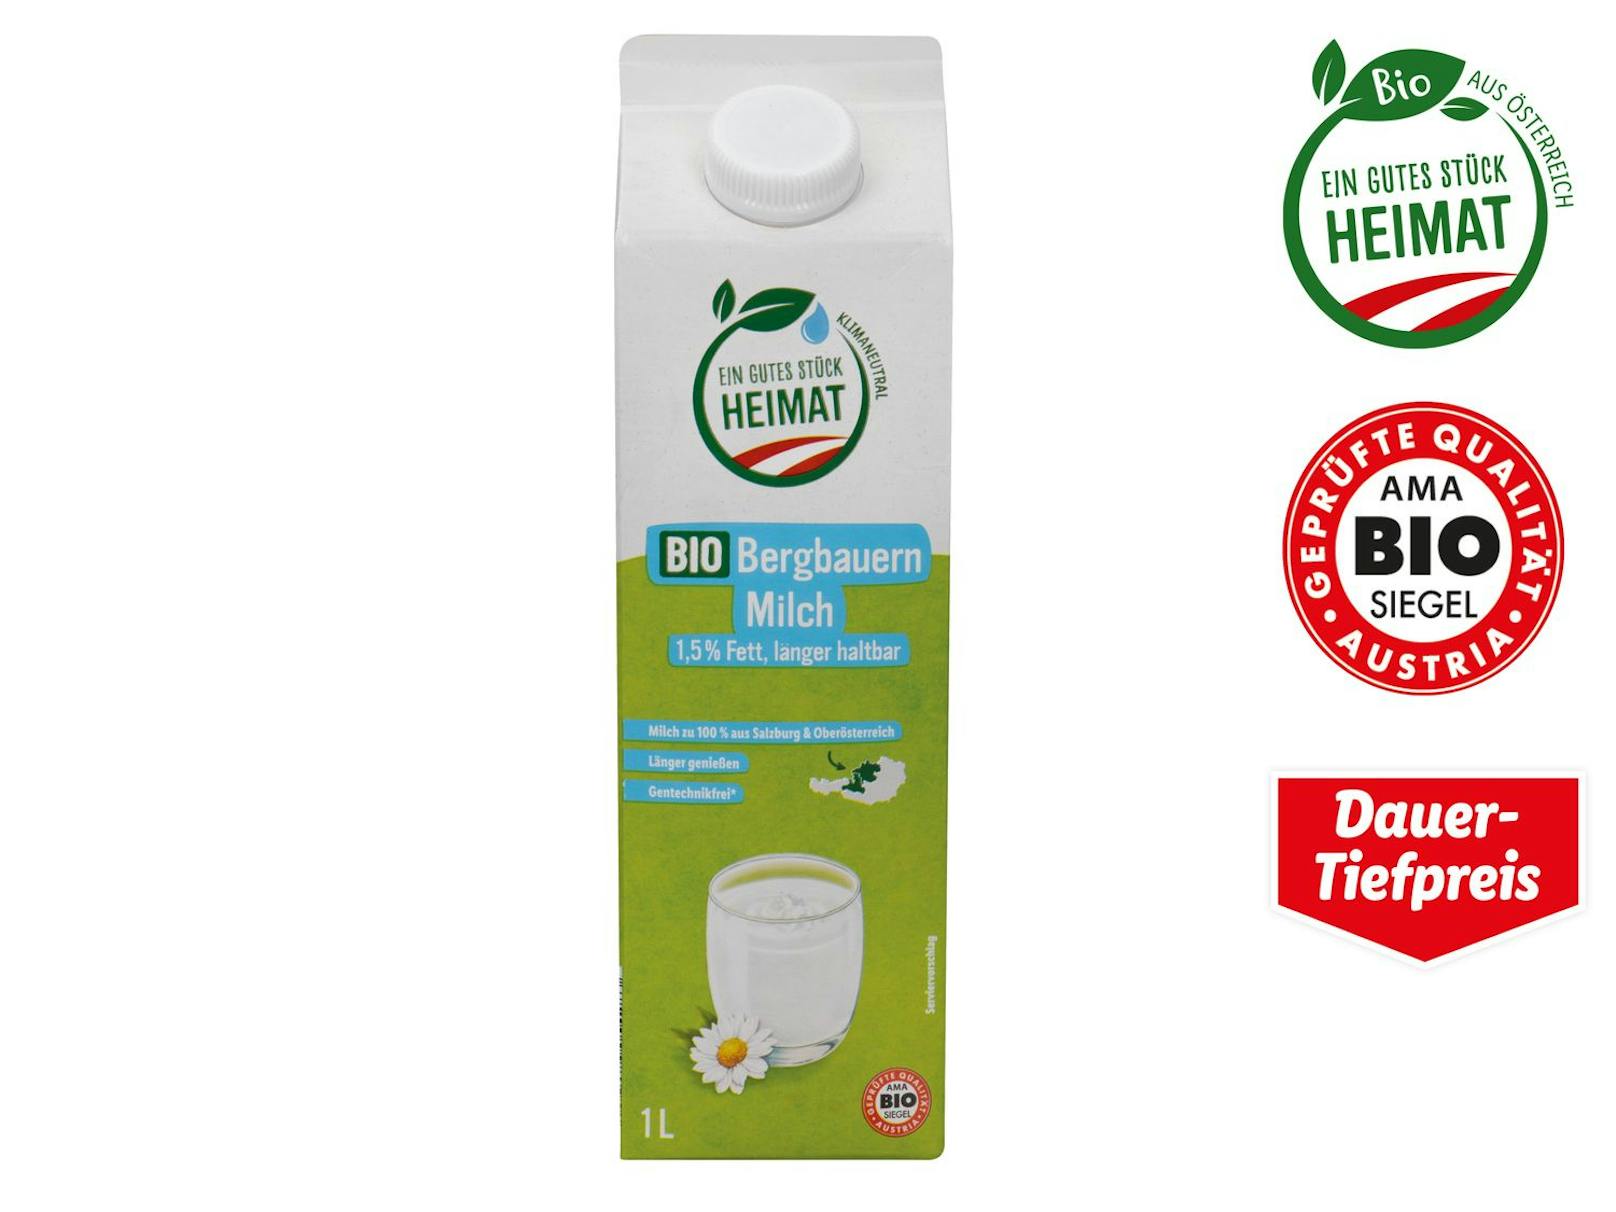 Ein Liter Bio Bergbauern Milch kostet statt 1,65 Euro nur noch 1,55 Euro.